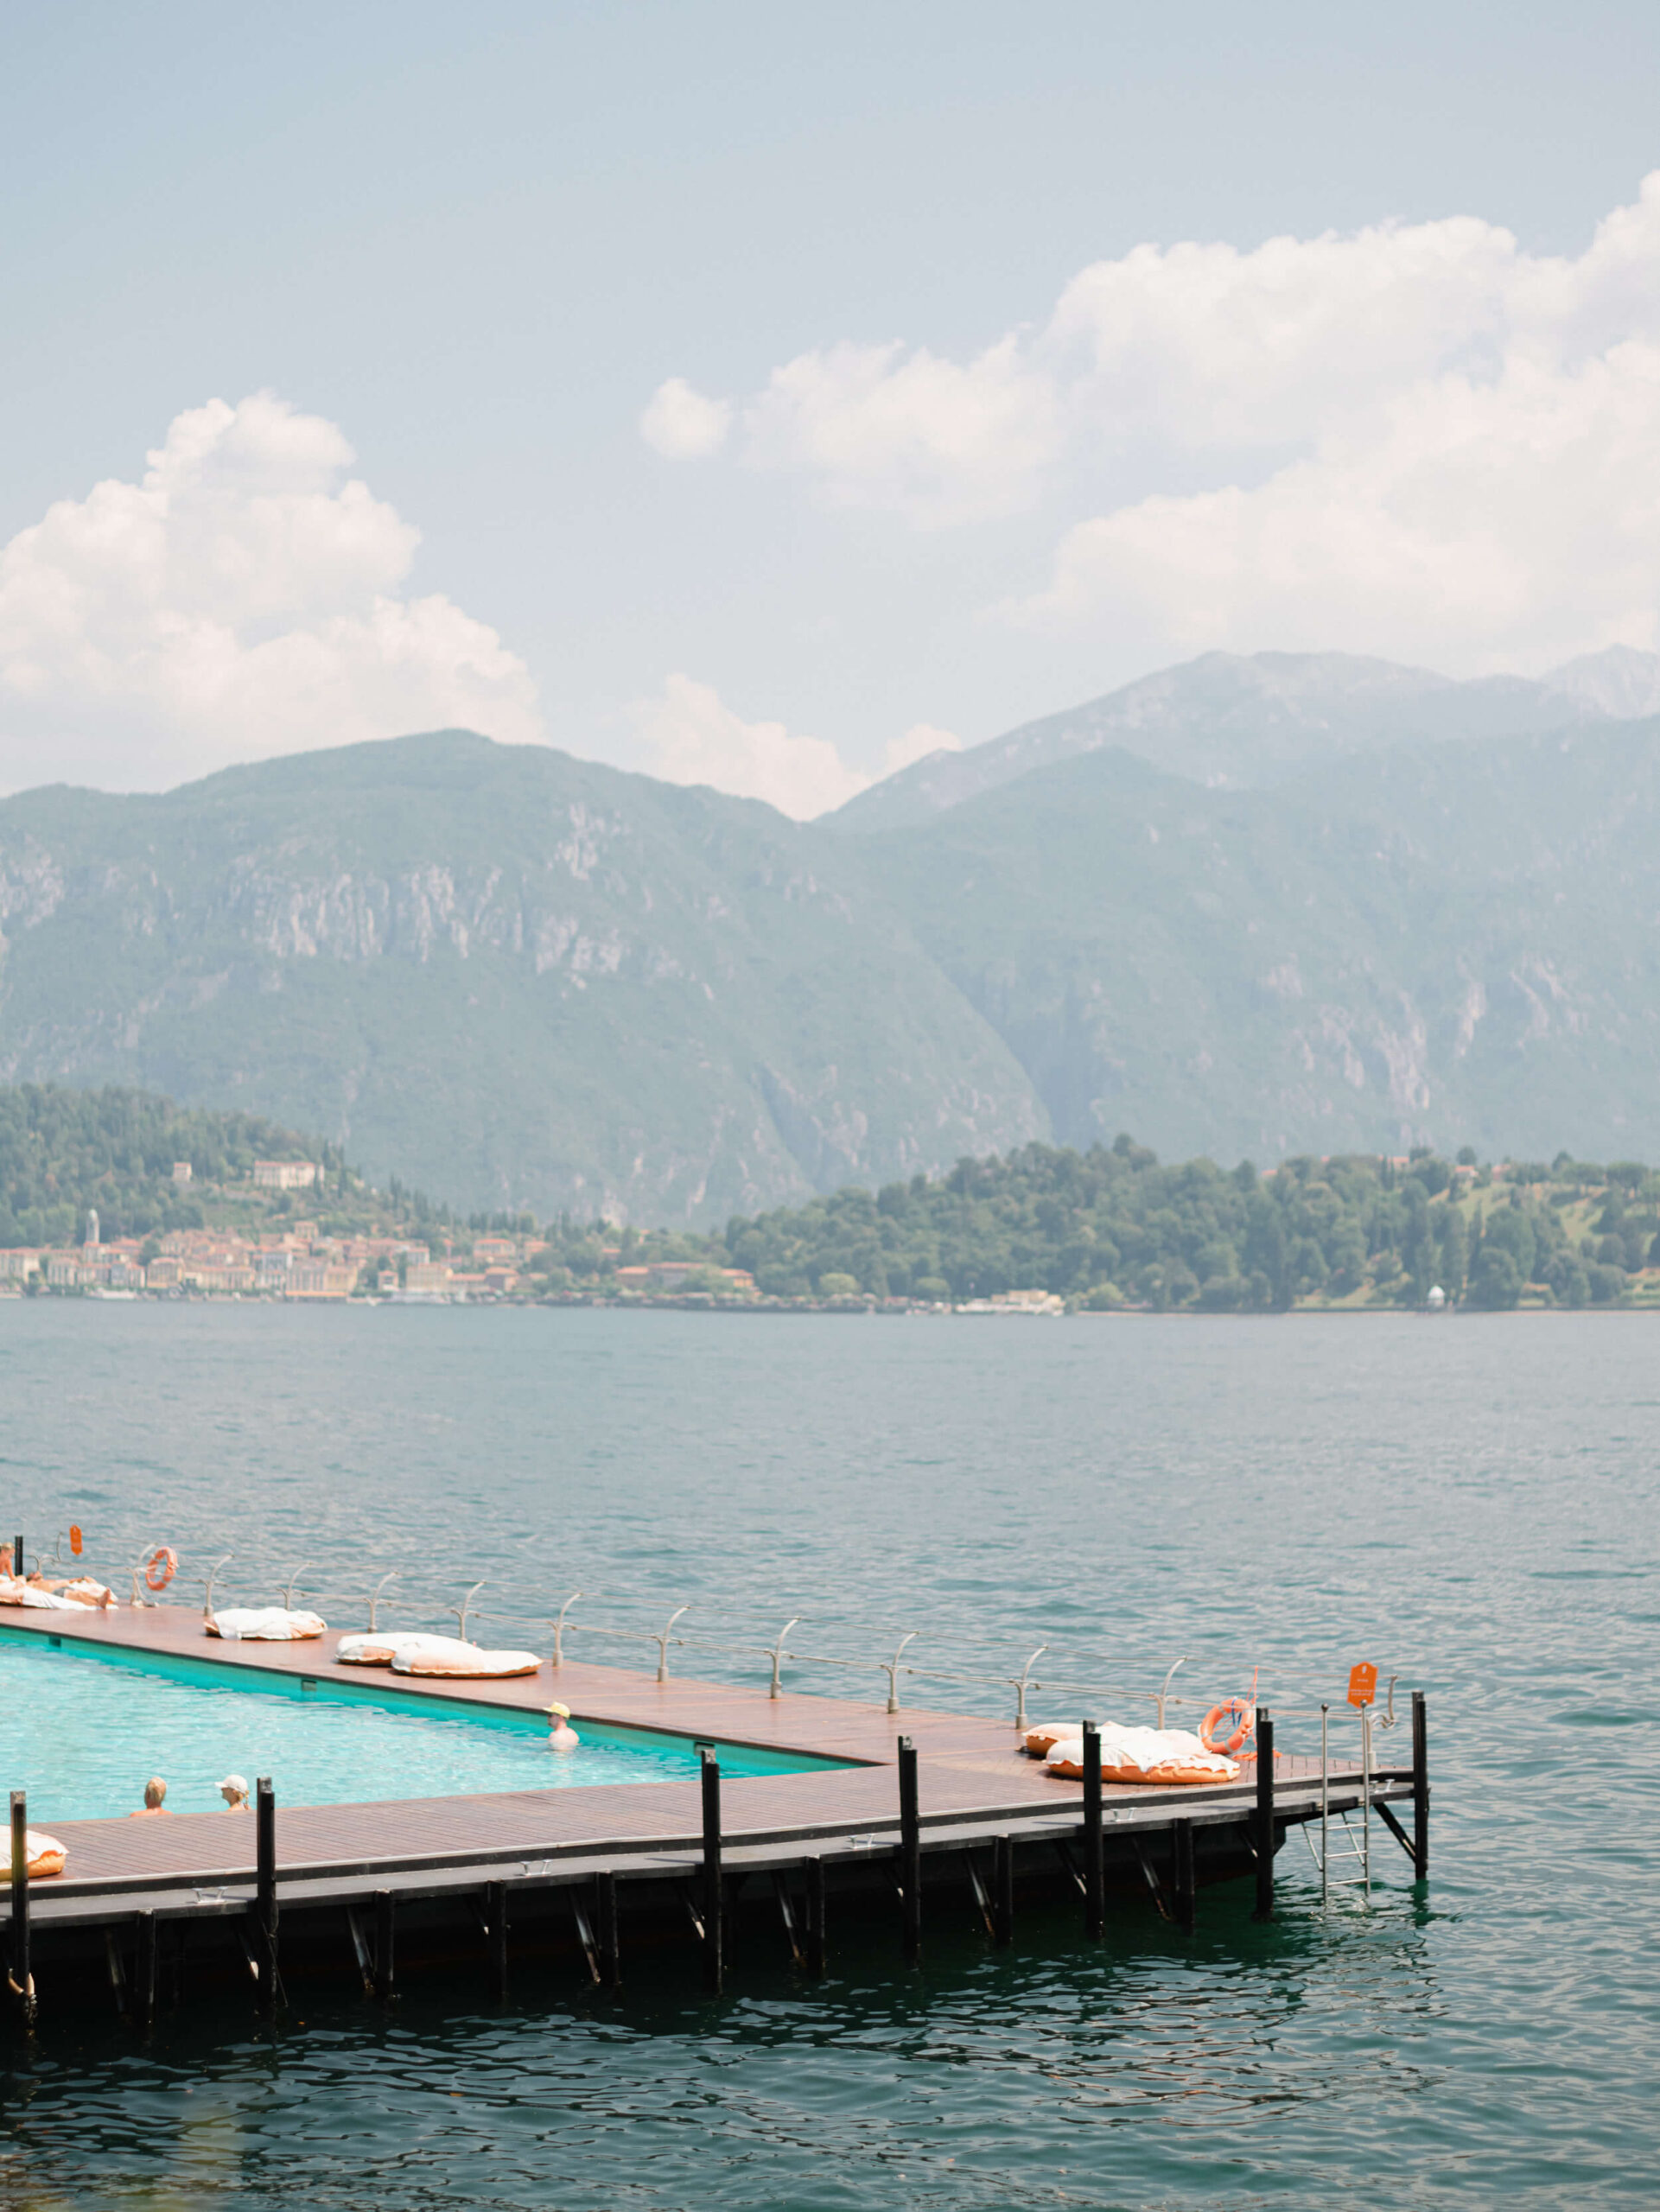 Pool on Lake Como, Italy